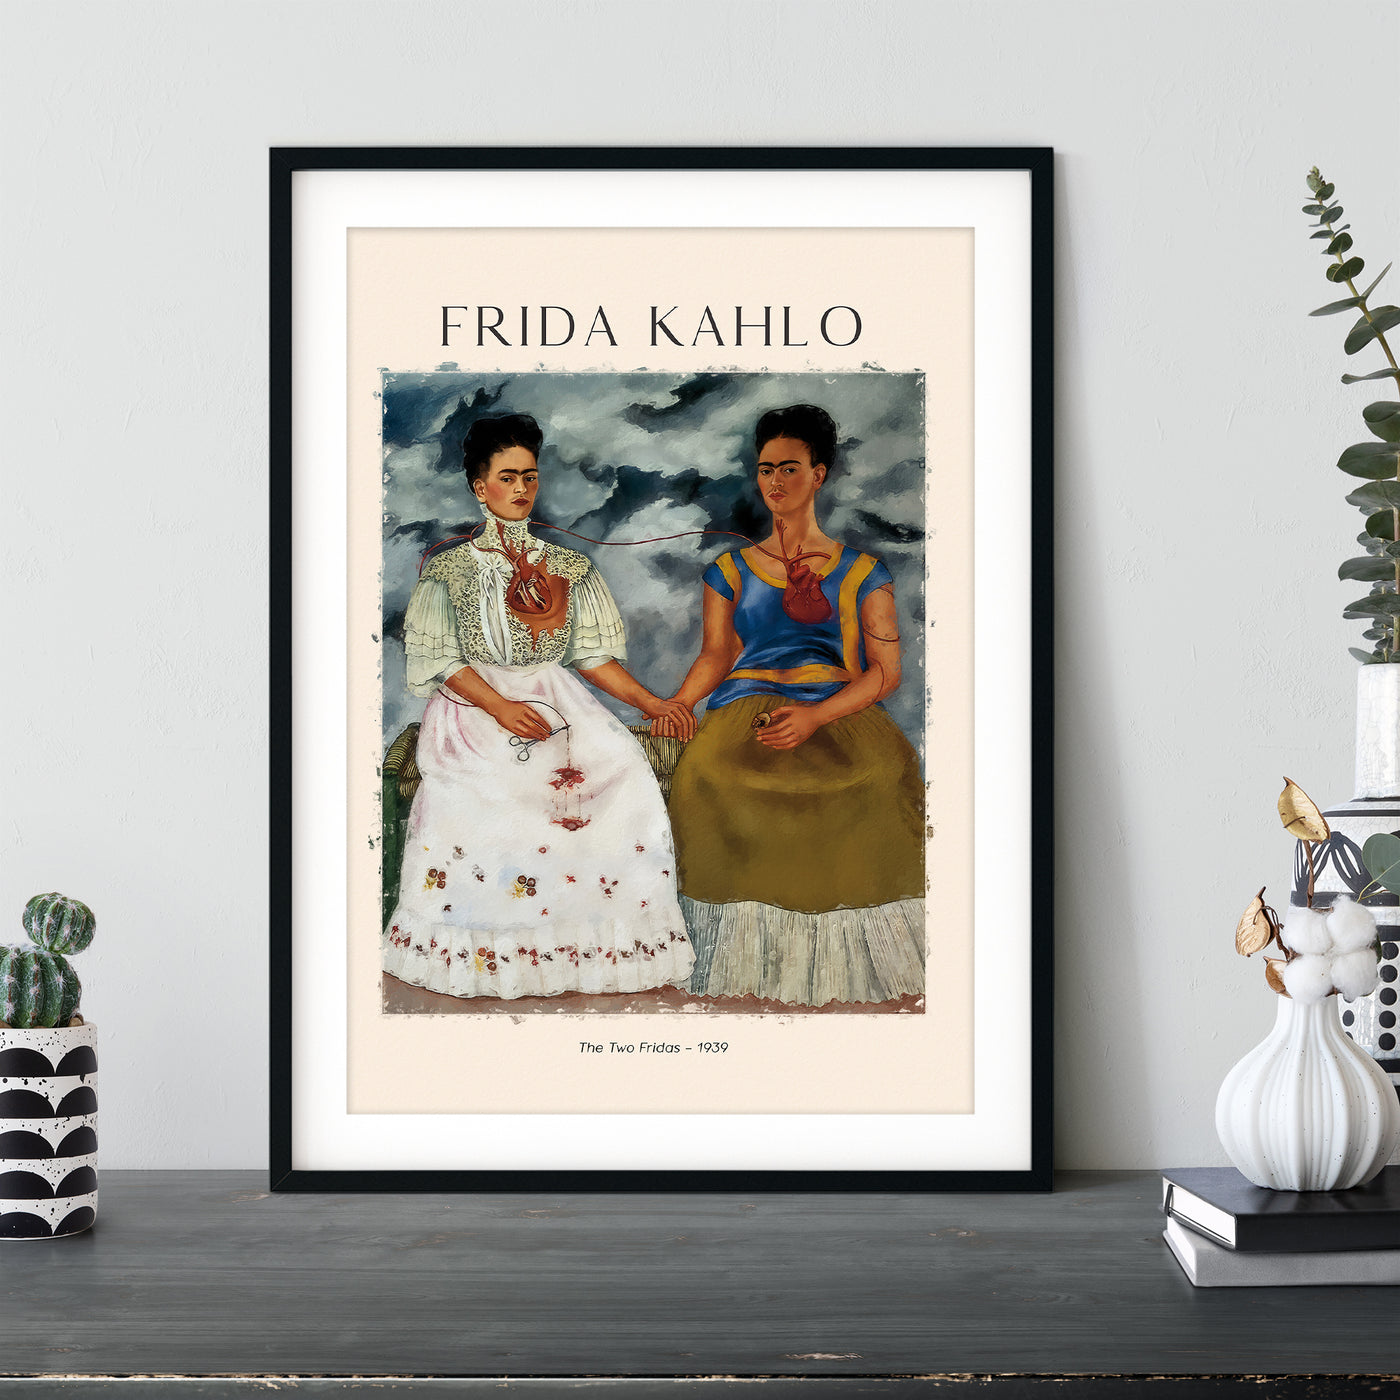 Frida Kahlo - The Two Fridas - 1939